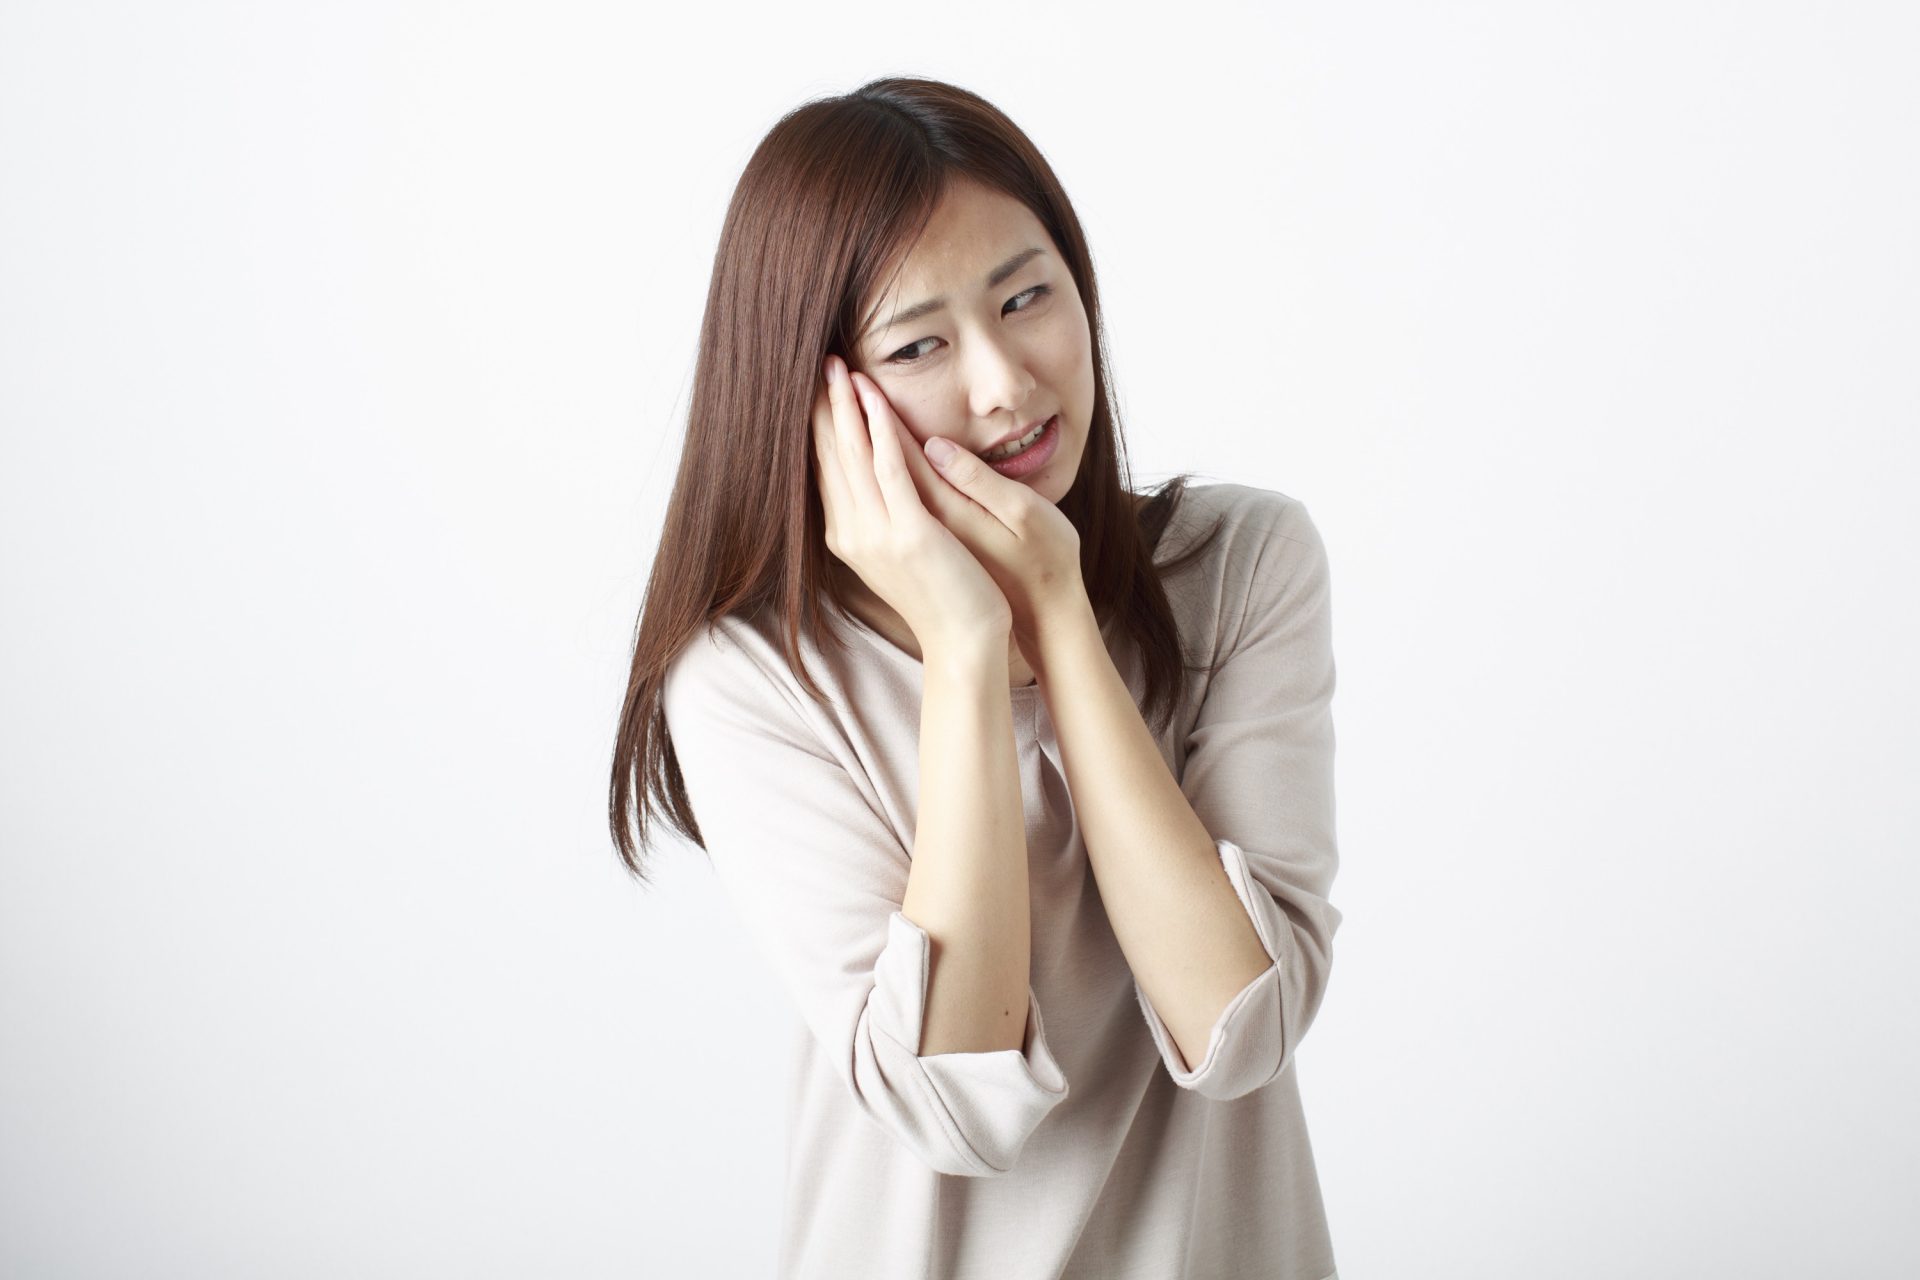 治療しても歯にものが挟まり、治らない！歯医者におけるセカンドオピニオンの重要性 東京日本橋の歯科医院 北川デンタルオフィス